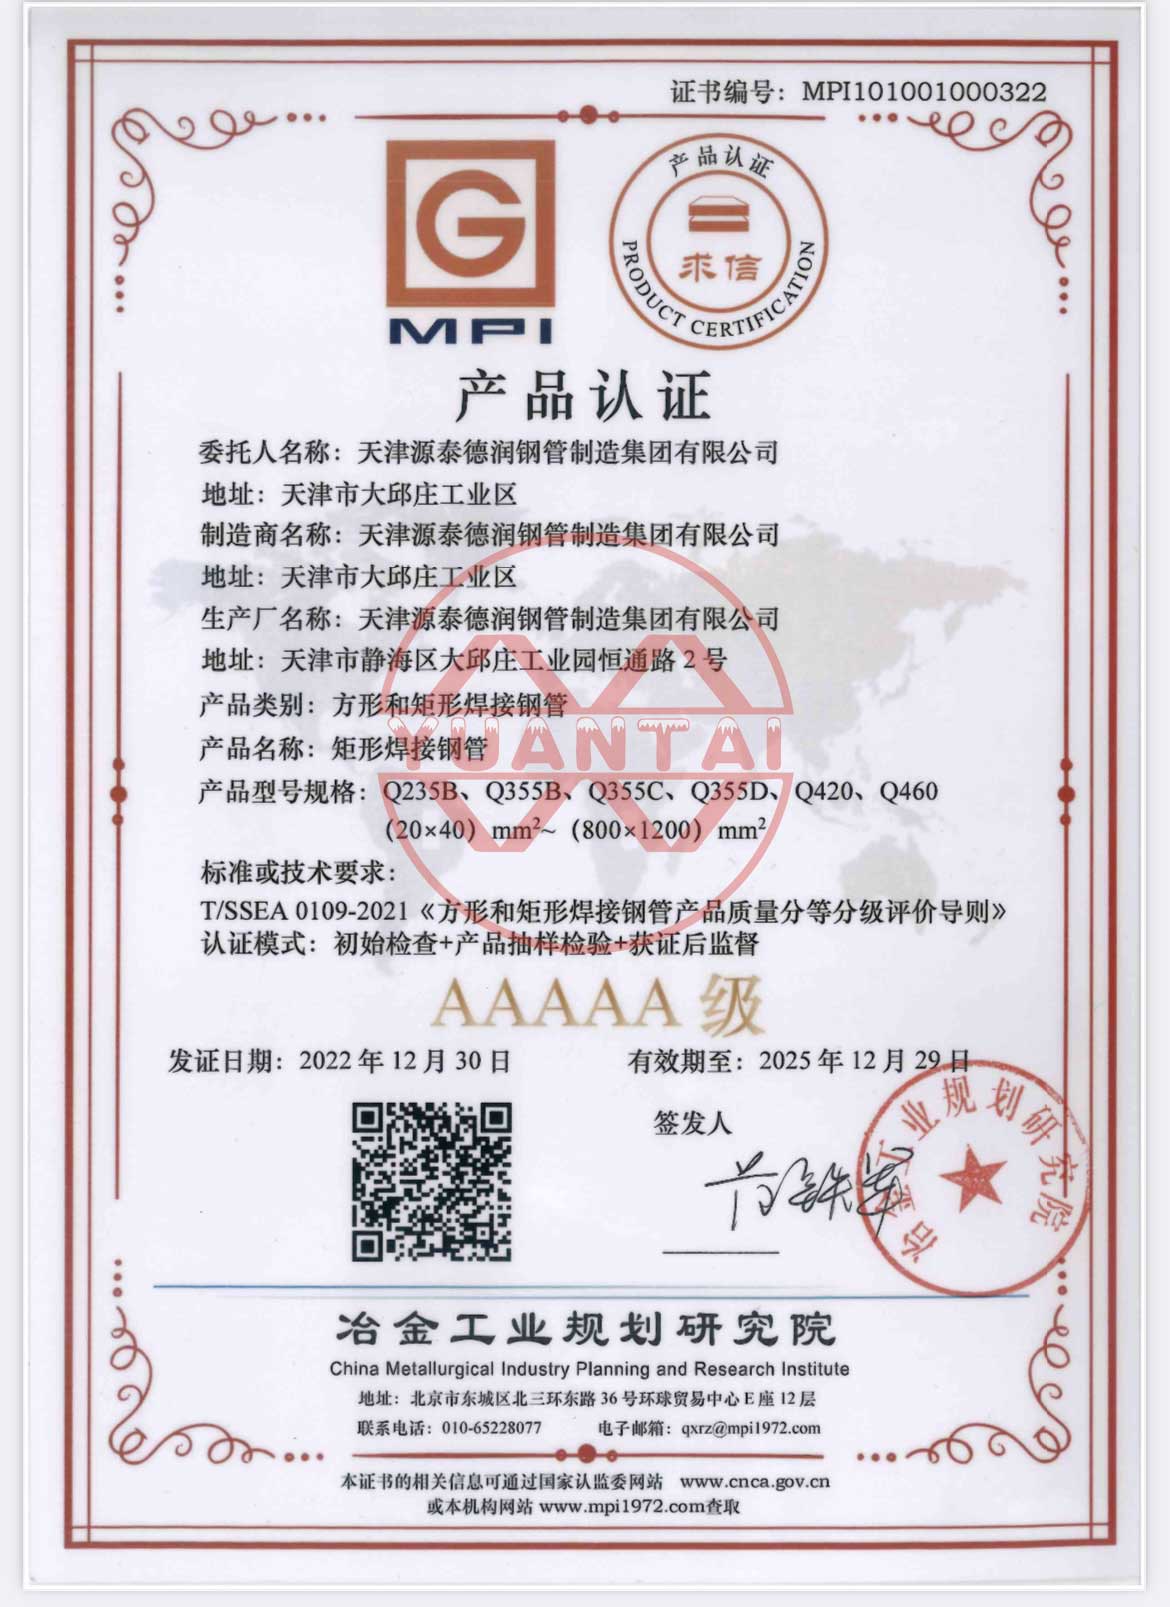 Pipa baja las persegi dan persegi panjang Tianjin Yuantai Derun Group dianugerahi sertifikasi produk AAAAA oleh Institut Perencanaan Industri Metalurgi